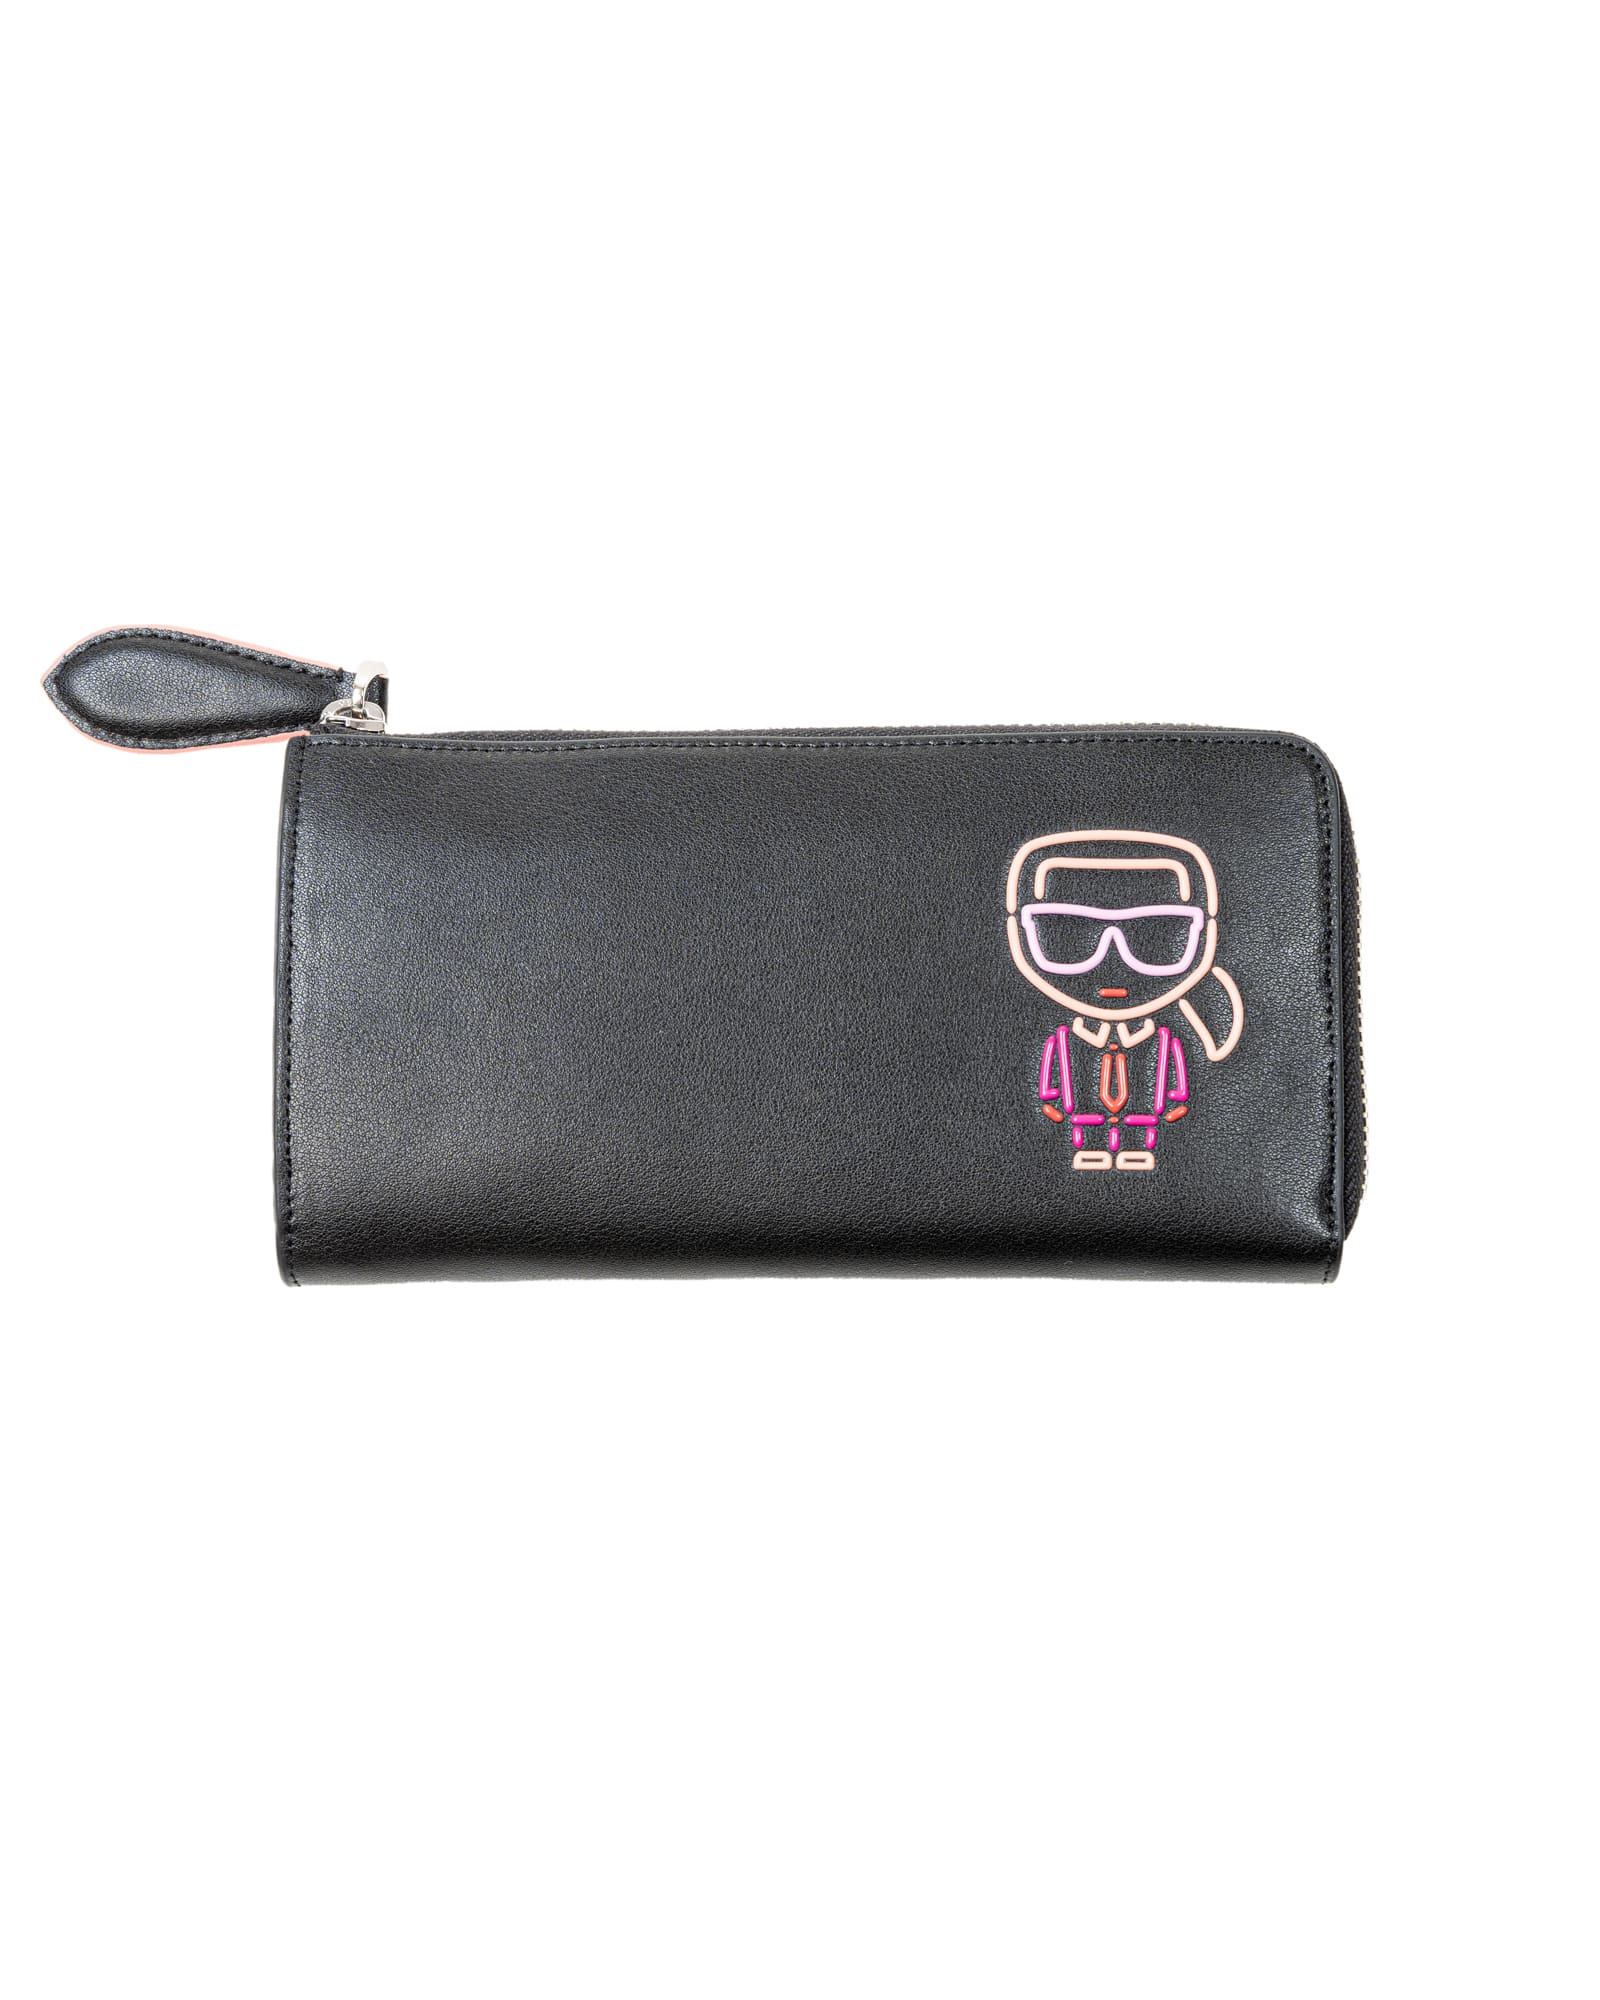 Karl Lagerfeld zip around wallet